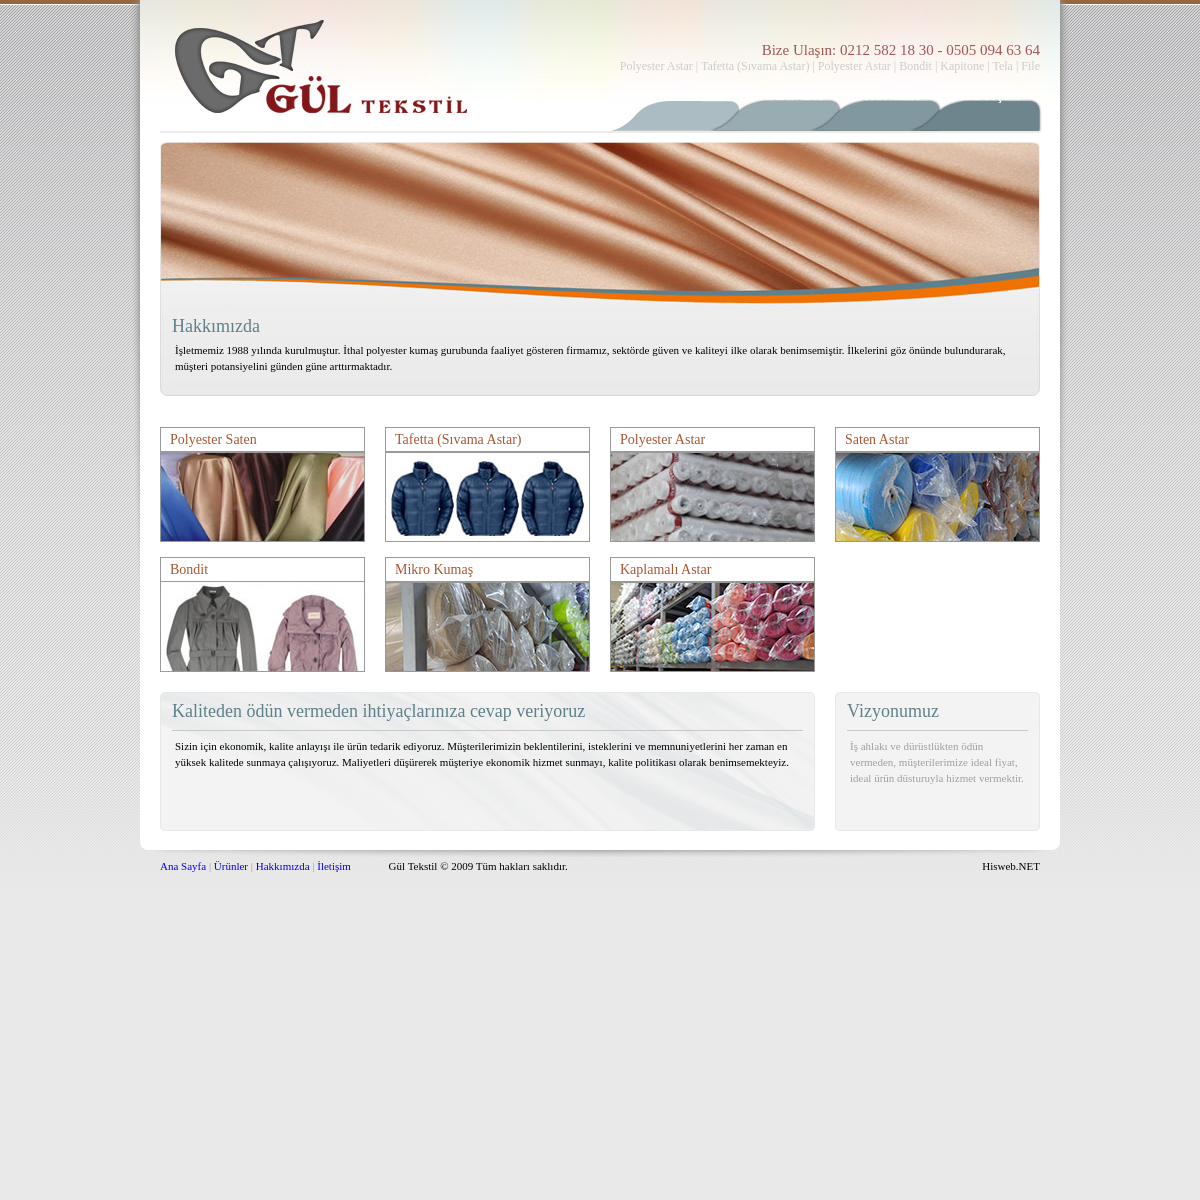 A complete backup of gul-tekstil.com